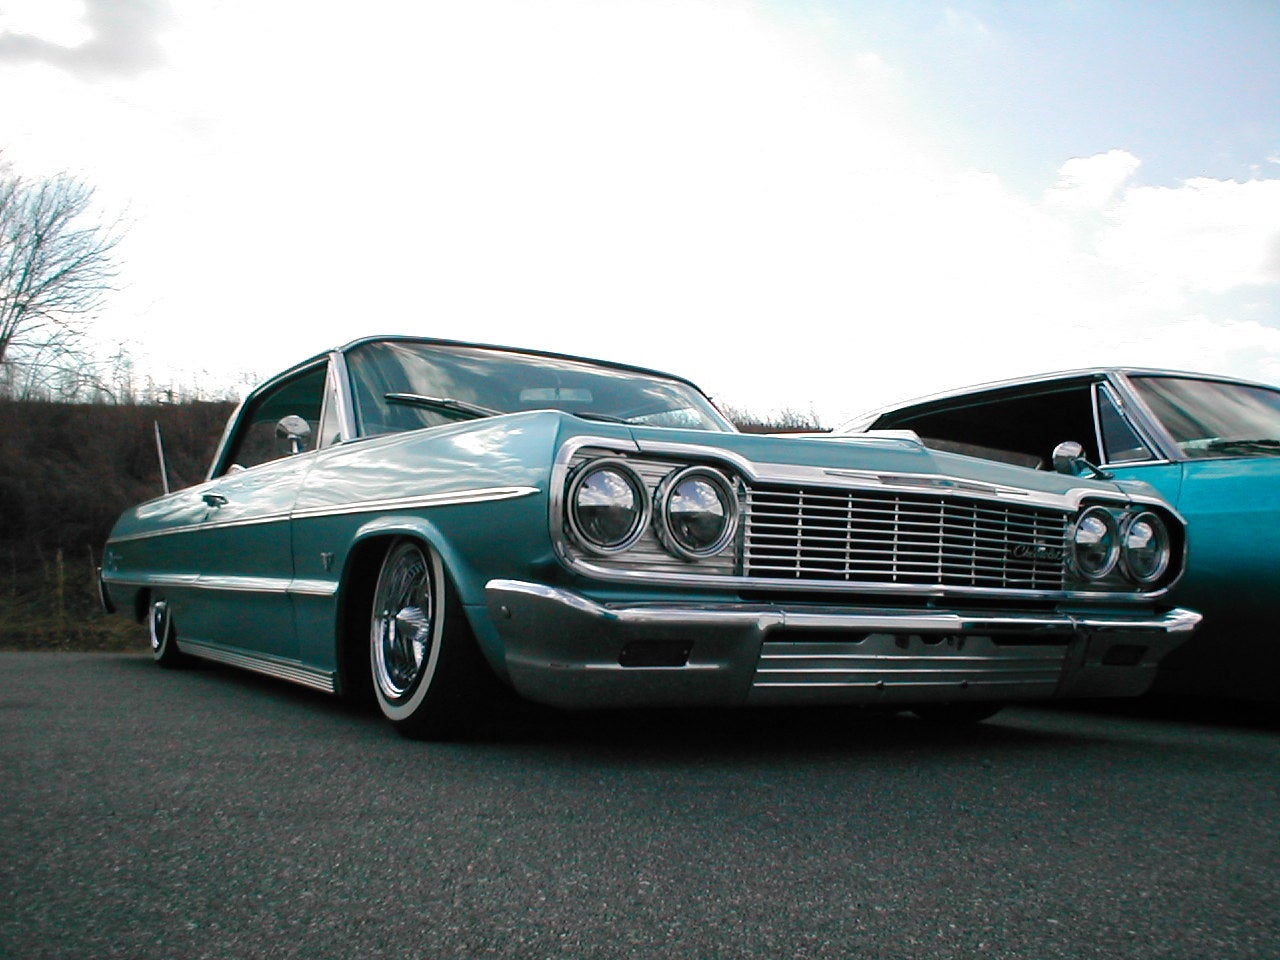 Blue Impala 64